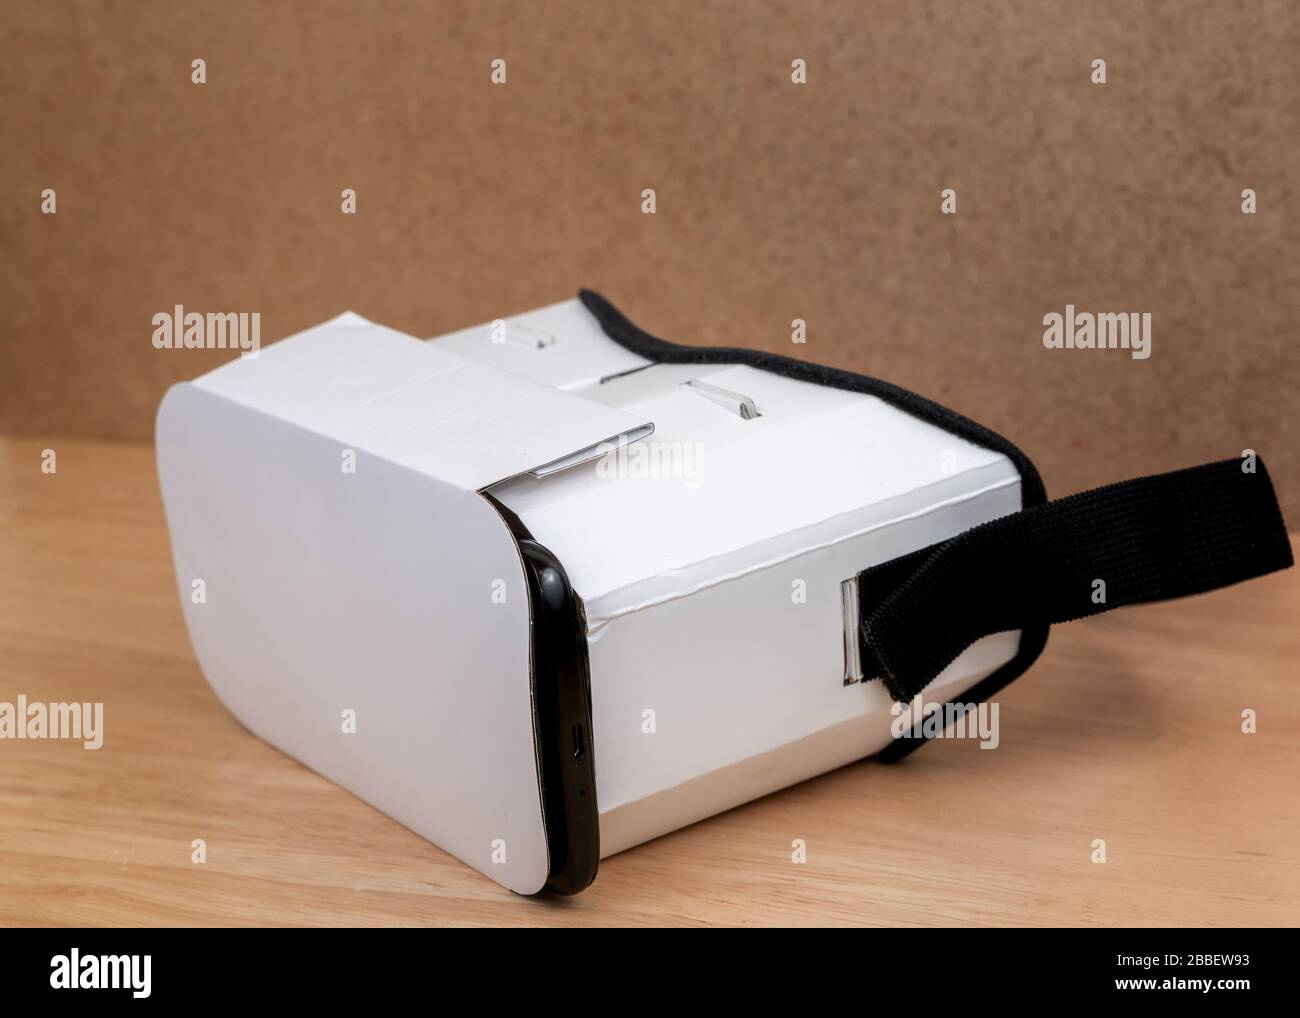 Un casque VR en carton. Vue d'un angle à l'avant. L'avant est fermé et le bord du téléphone mobile inséré est visible. Il est sur un WO Banque D'Images